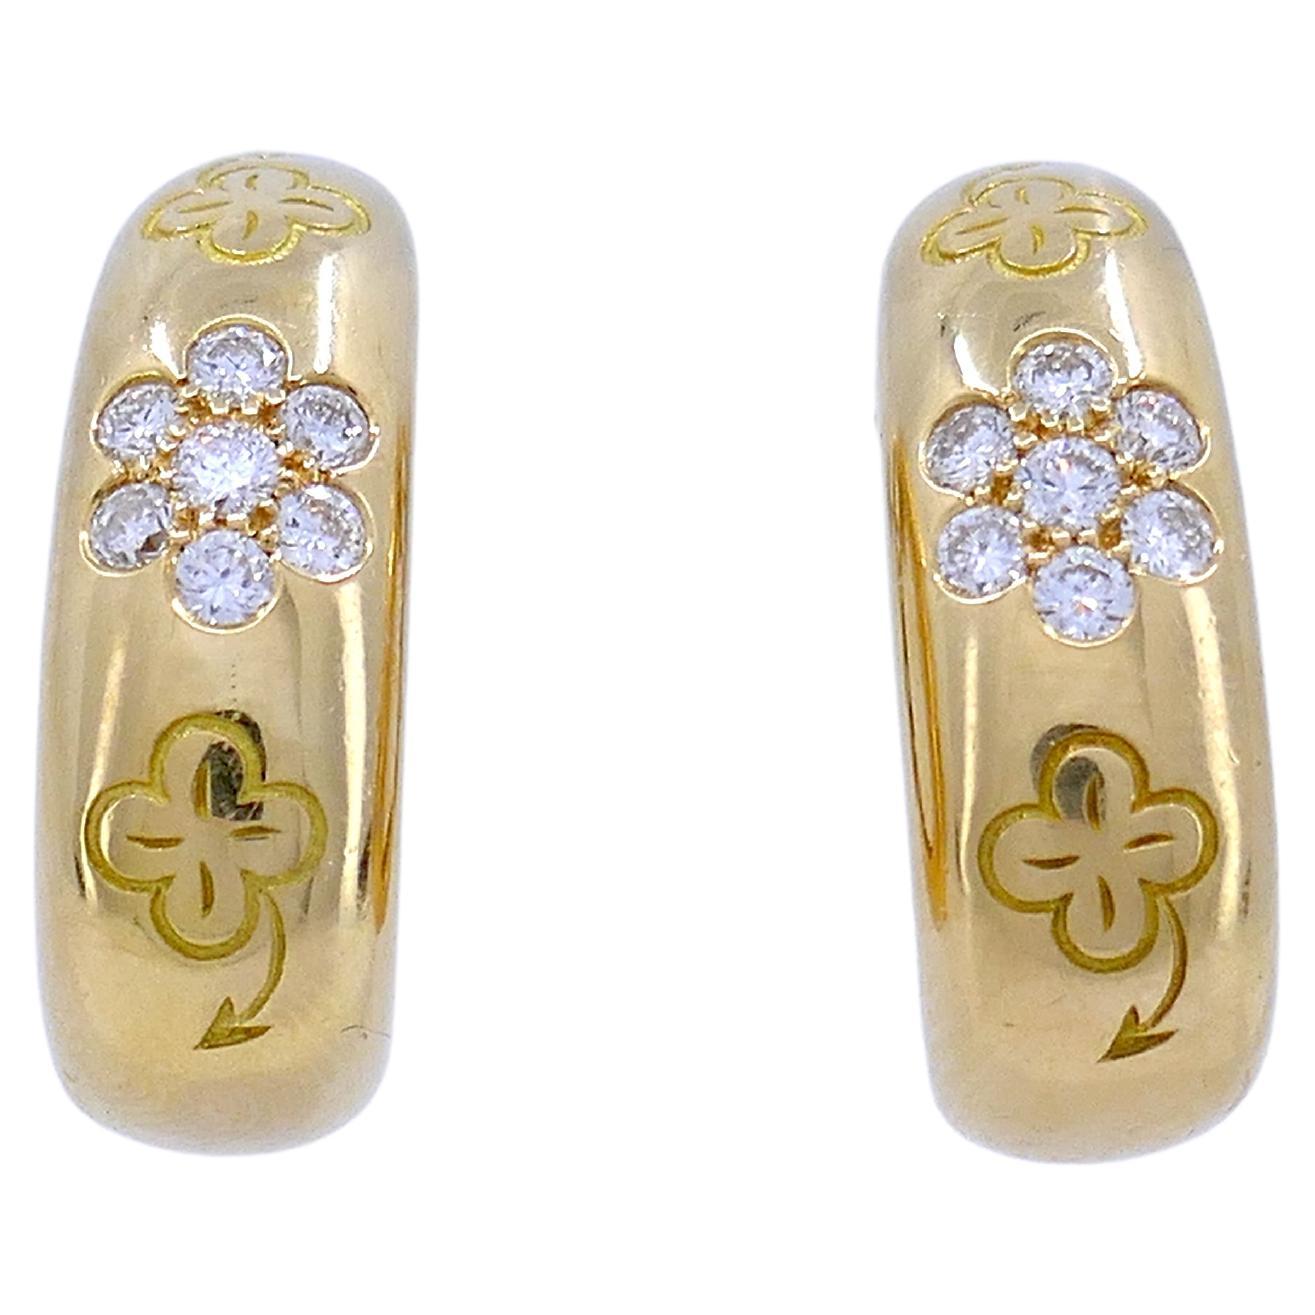 Van Cleef & Arpels Alhambra Diamond Hoop Earrings 18k Gold